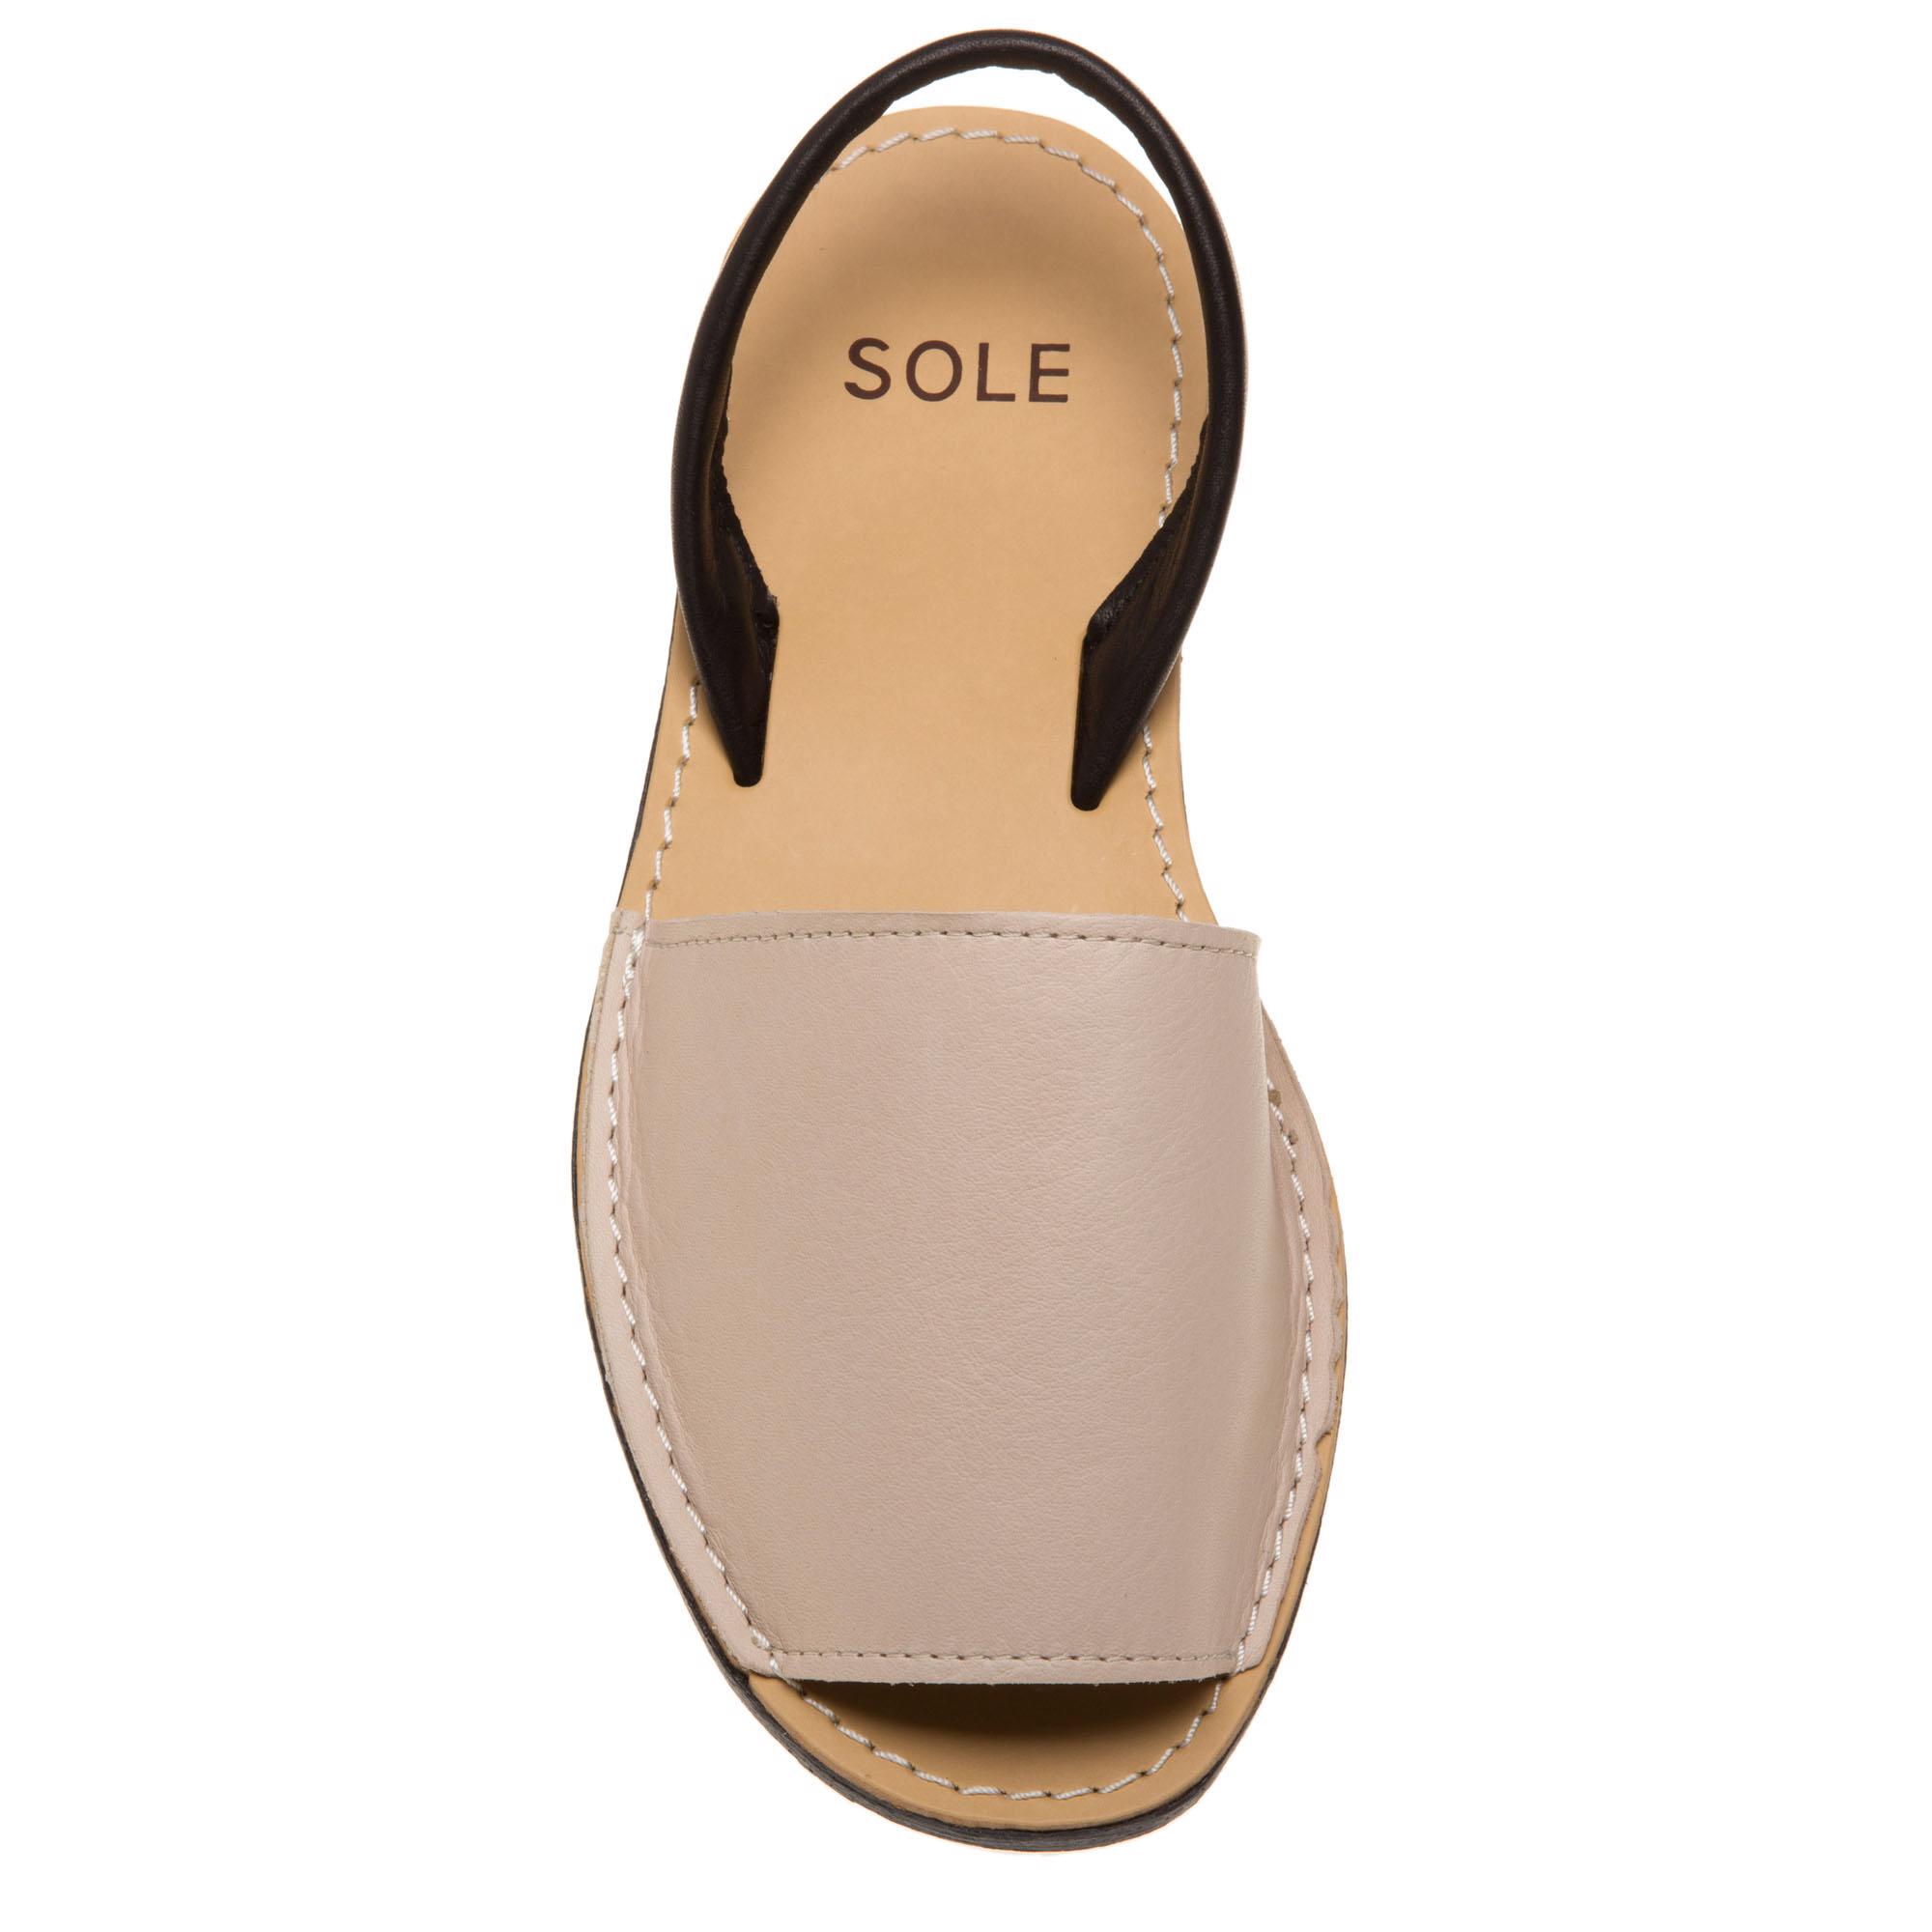 SOLE Toucan Sandals Black 